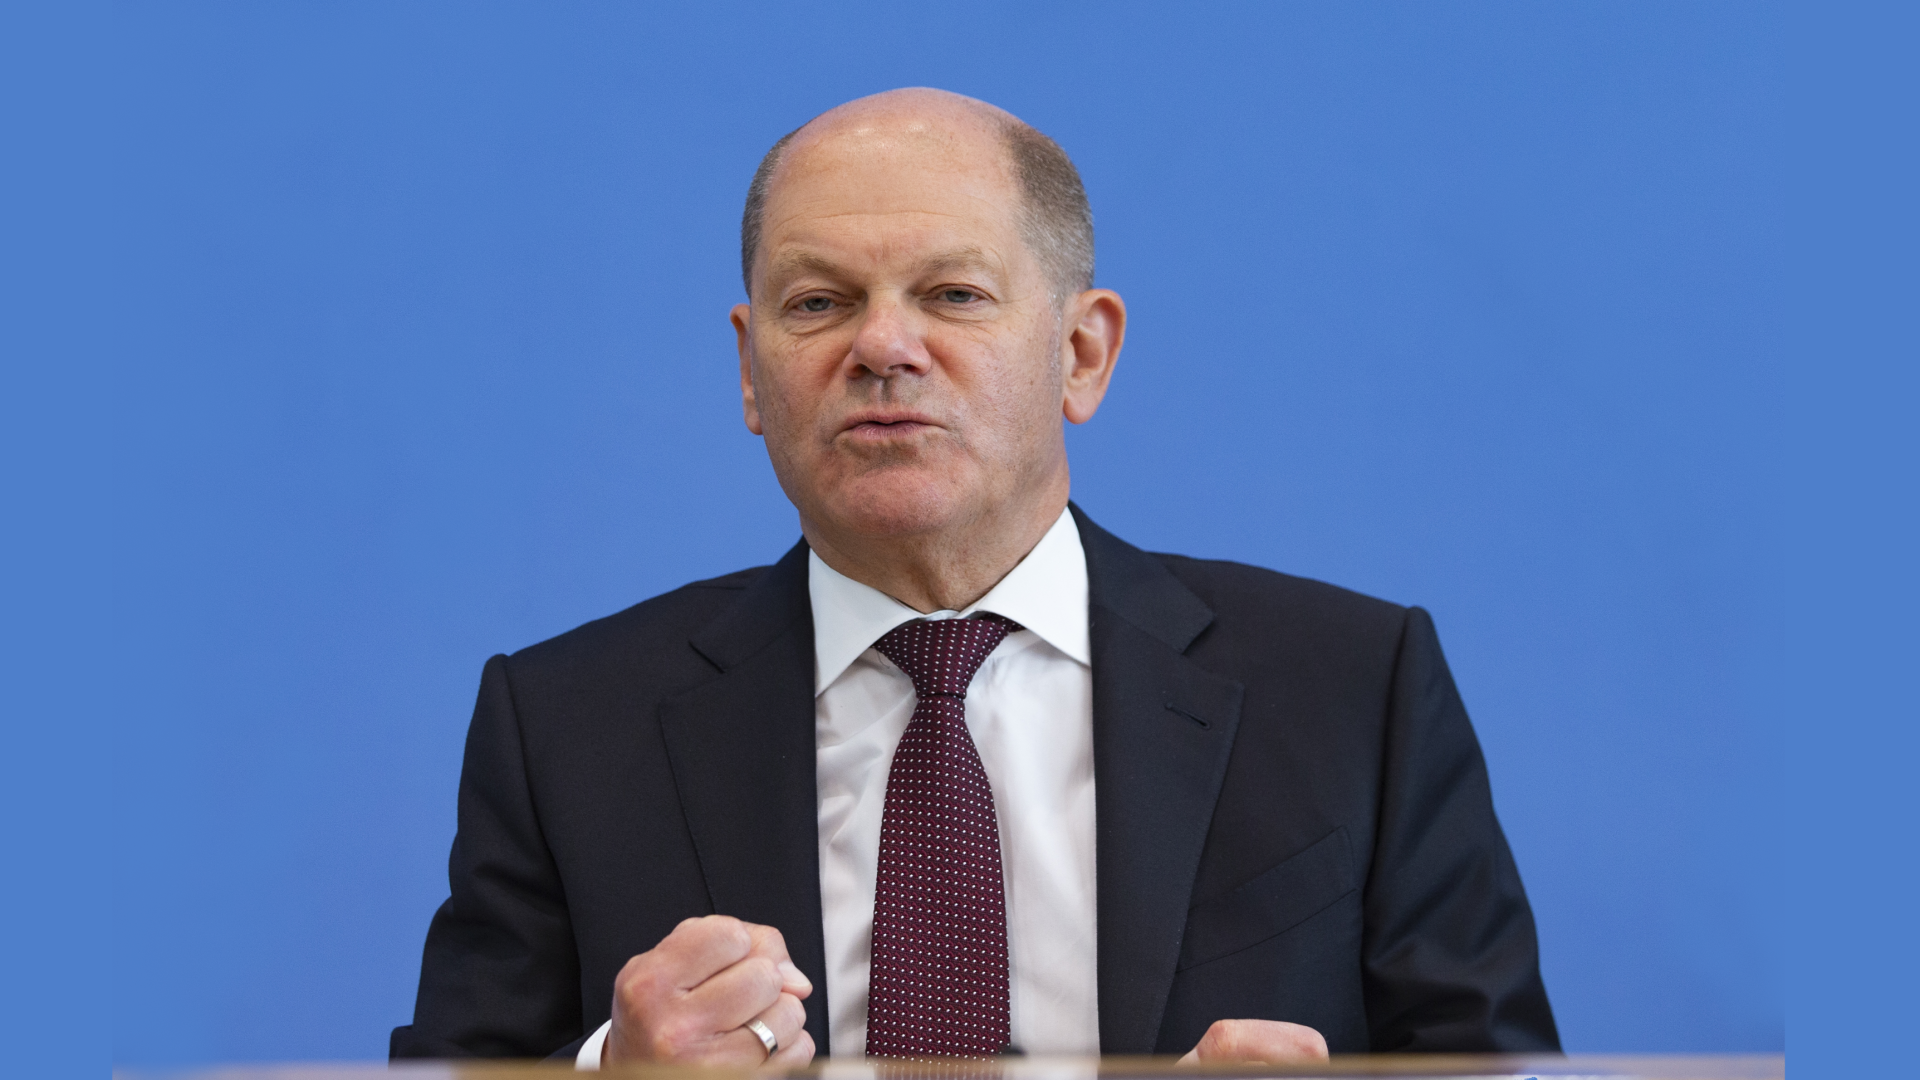 Bundesfinanzminister Olaf Scholz gibt sich kämpferisch bei der Aufklärung der Cum-Ex-Deals. | Foto: picture alliance / AA